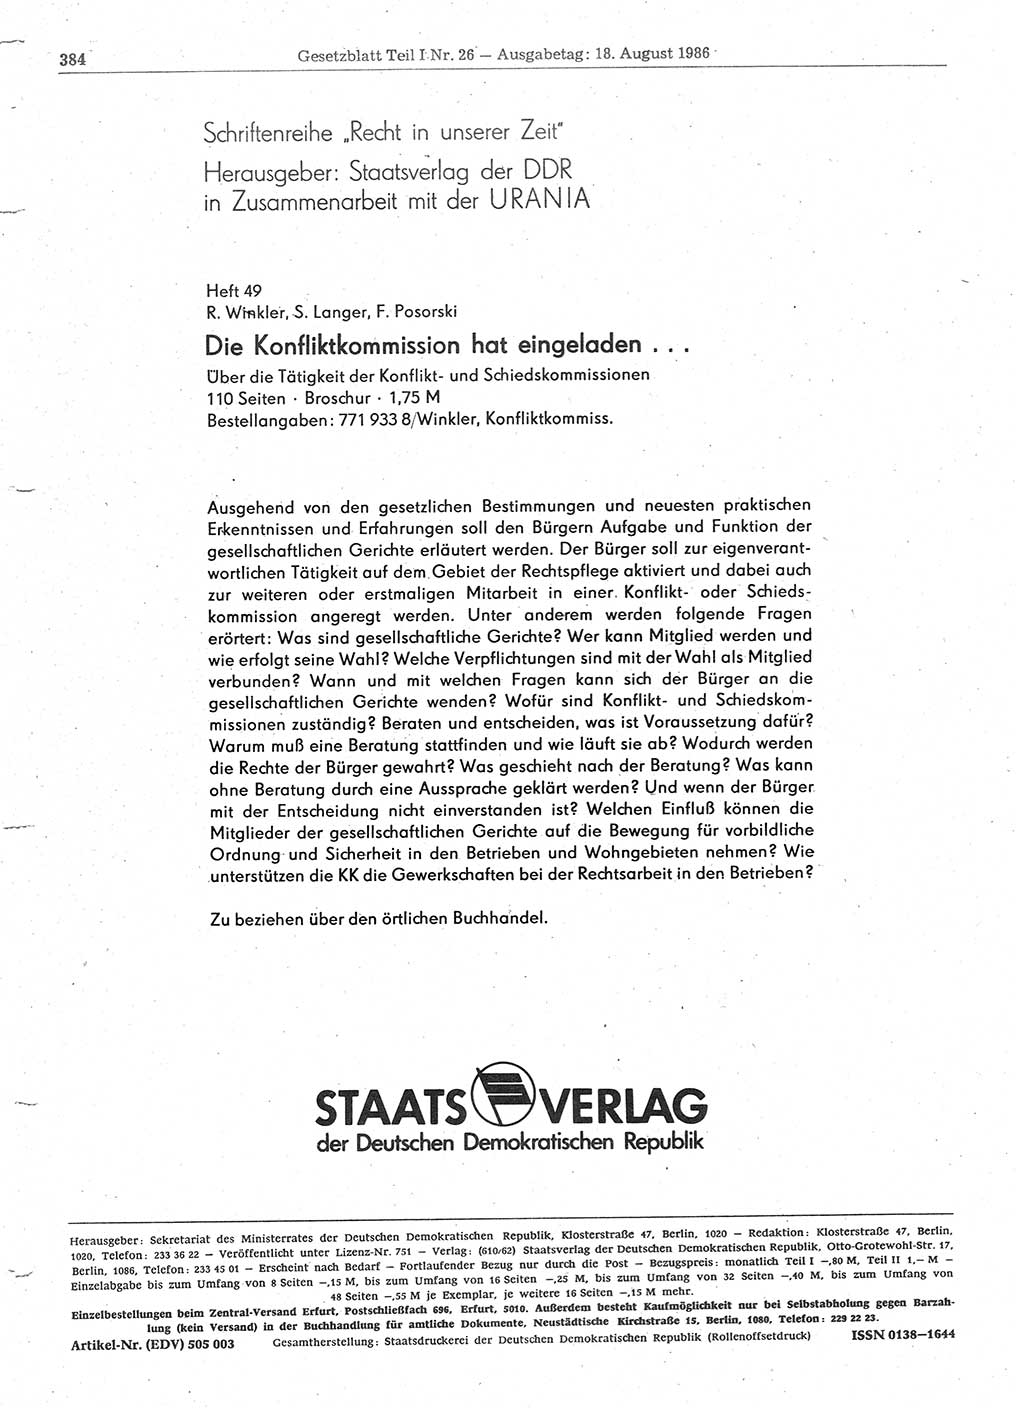 Gesetzblatt (GBl.) der Deutschen Demokratischen Republik (DDR) Teil Ⅰ 1986, Seite 384 (GBl. DDR Ⅰ 1986, S. 384)